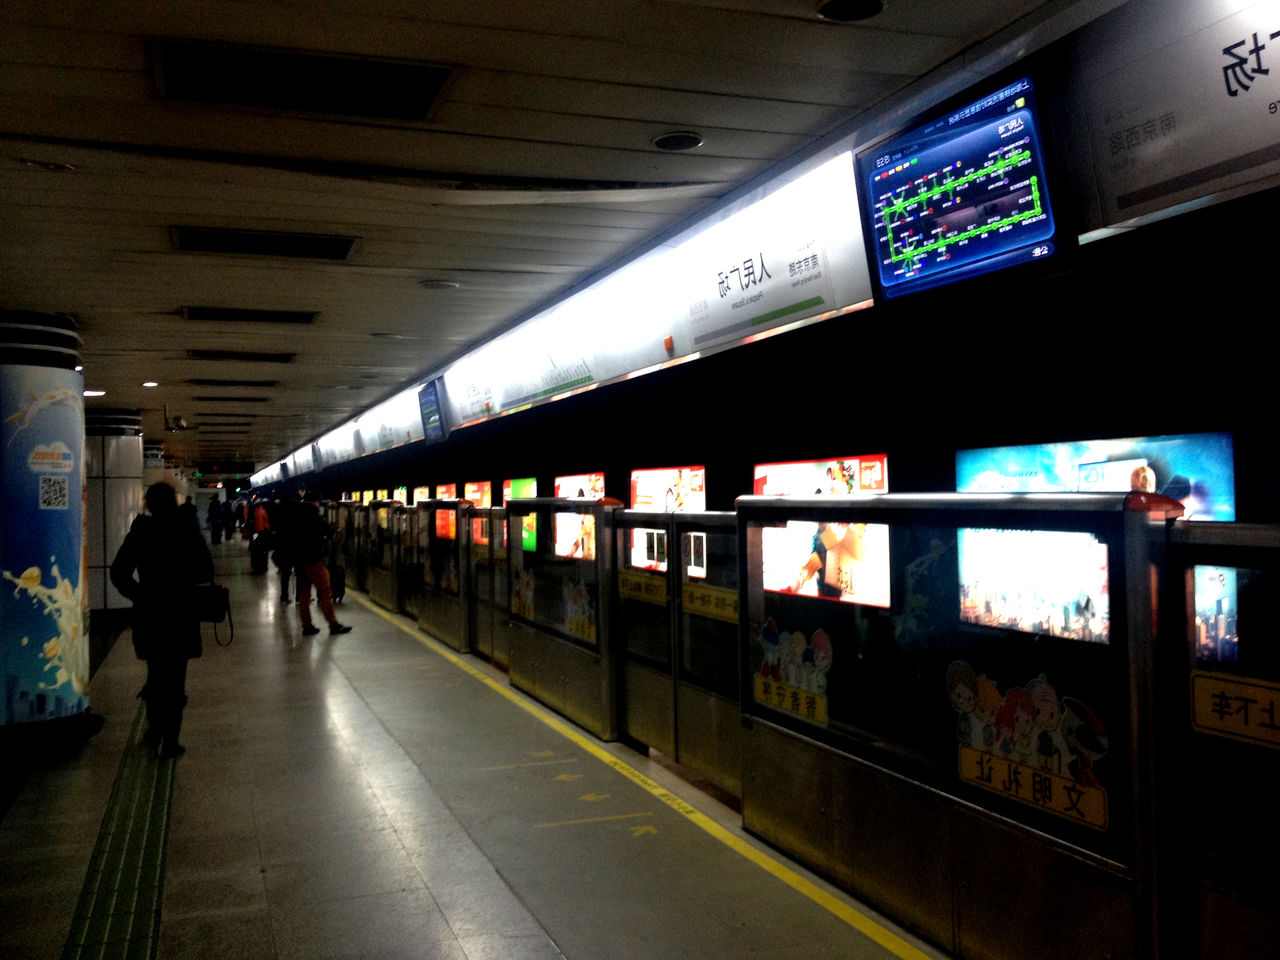 上海地铁人民广场站,在上海坐地铁到人民广场站几号出口到南京路步行街